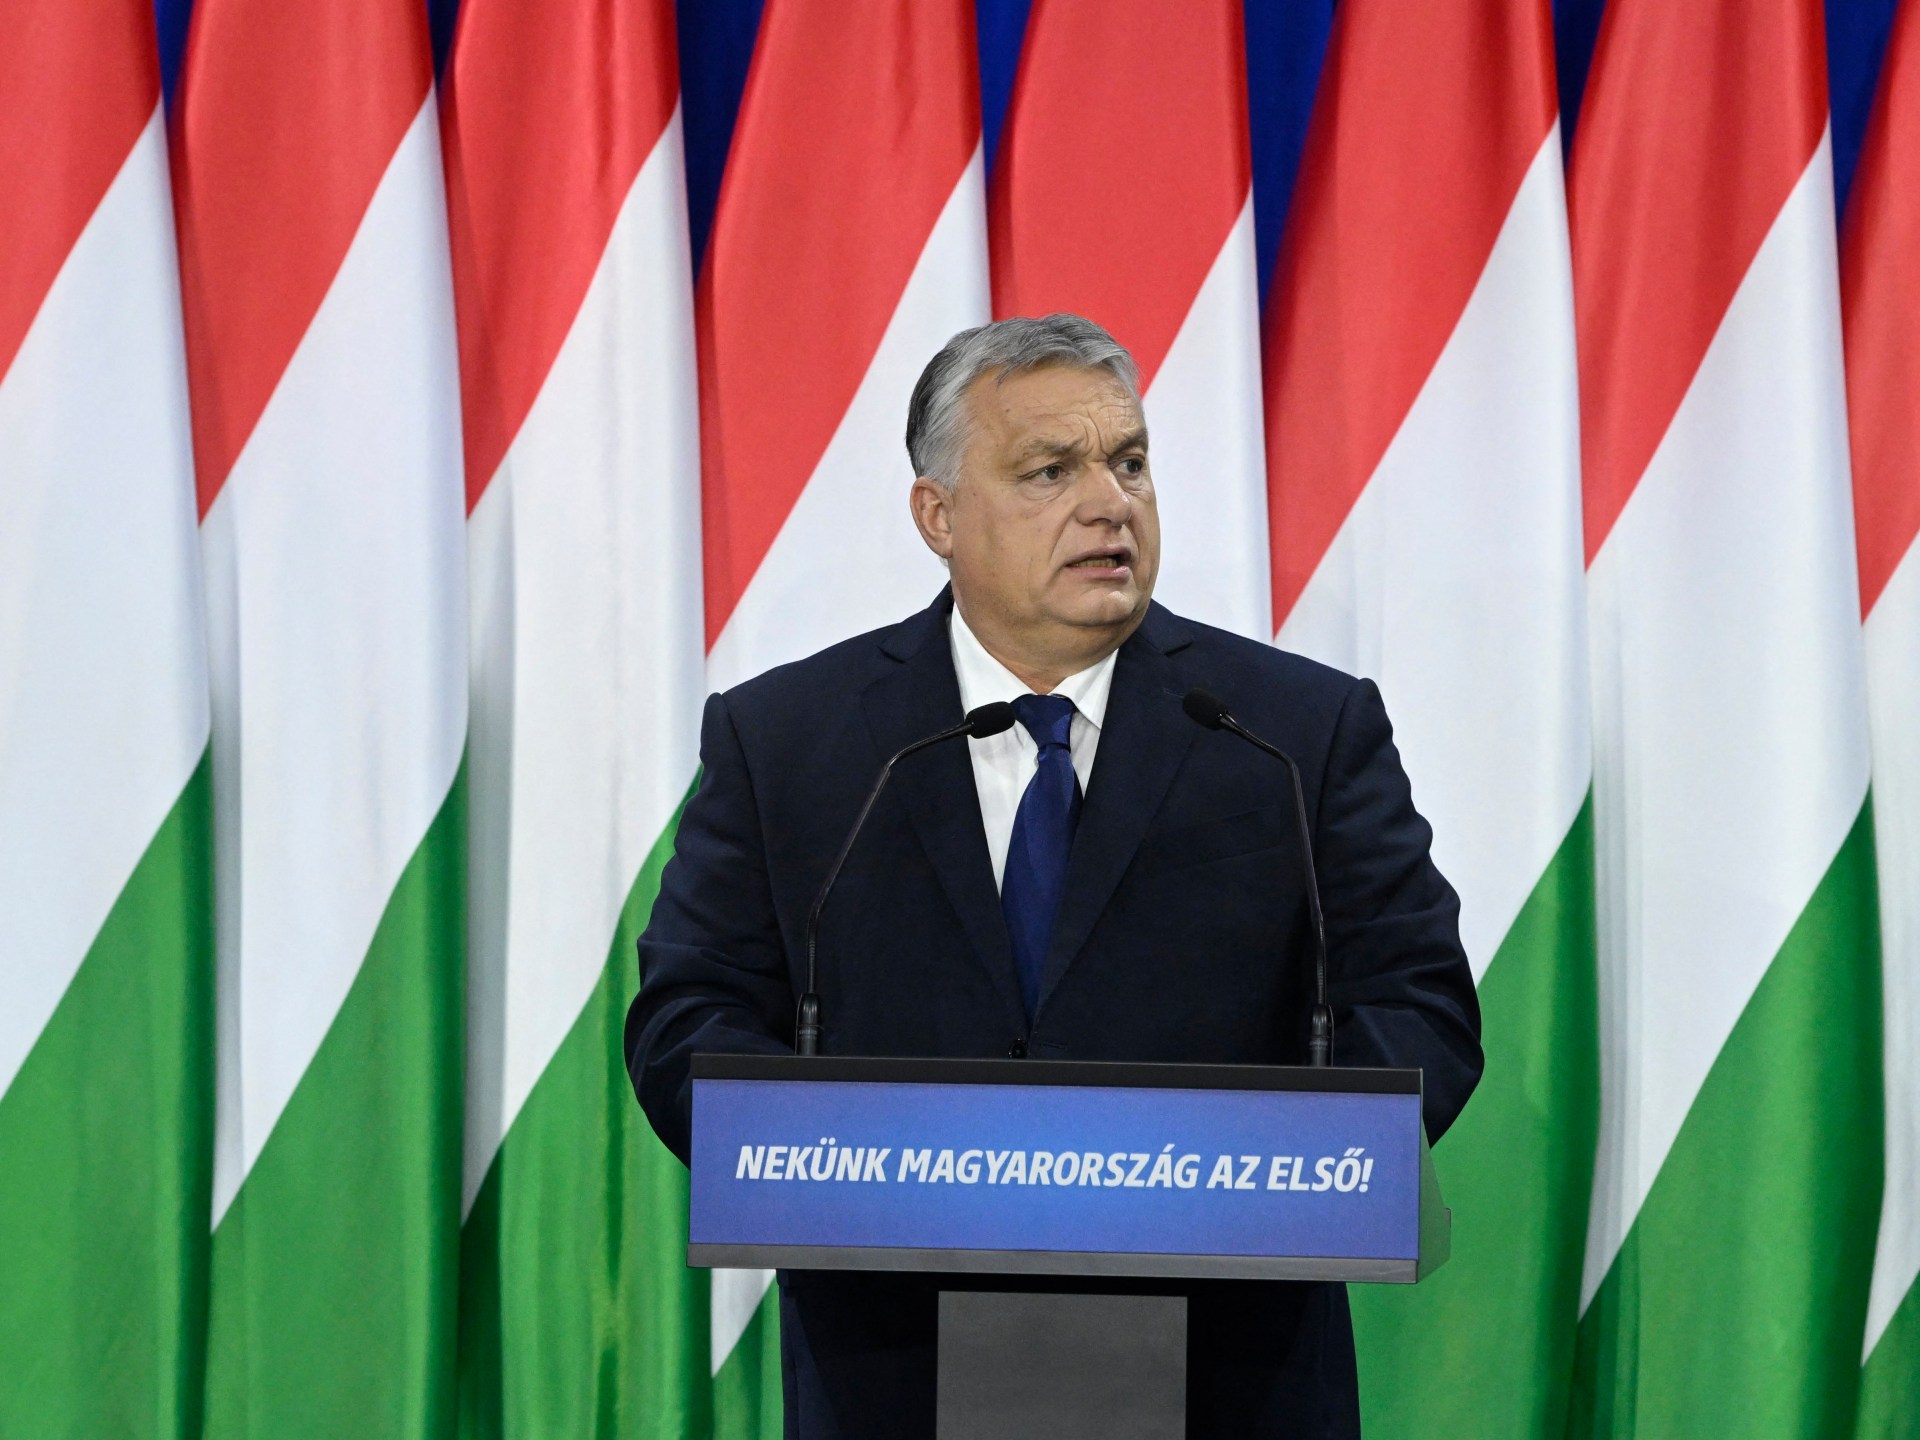 "وطنيون من أجل أوروبا": أوربان المجري يعلن عن تحالف برلماني جديد للاتحاد الأوروبي |  أخبار الاتحاد الأوروبي